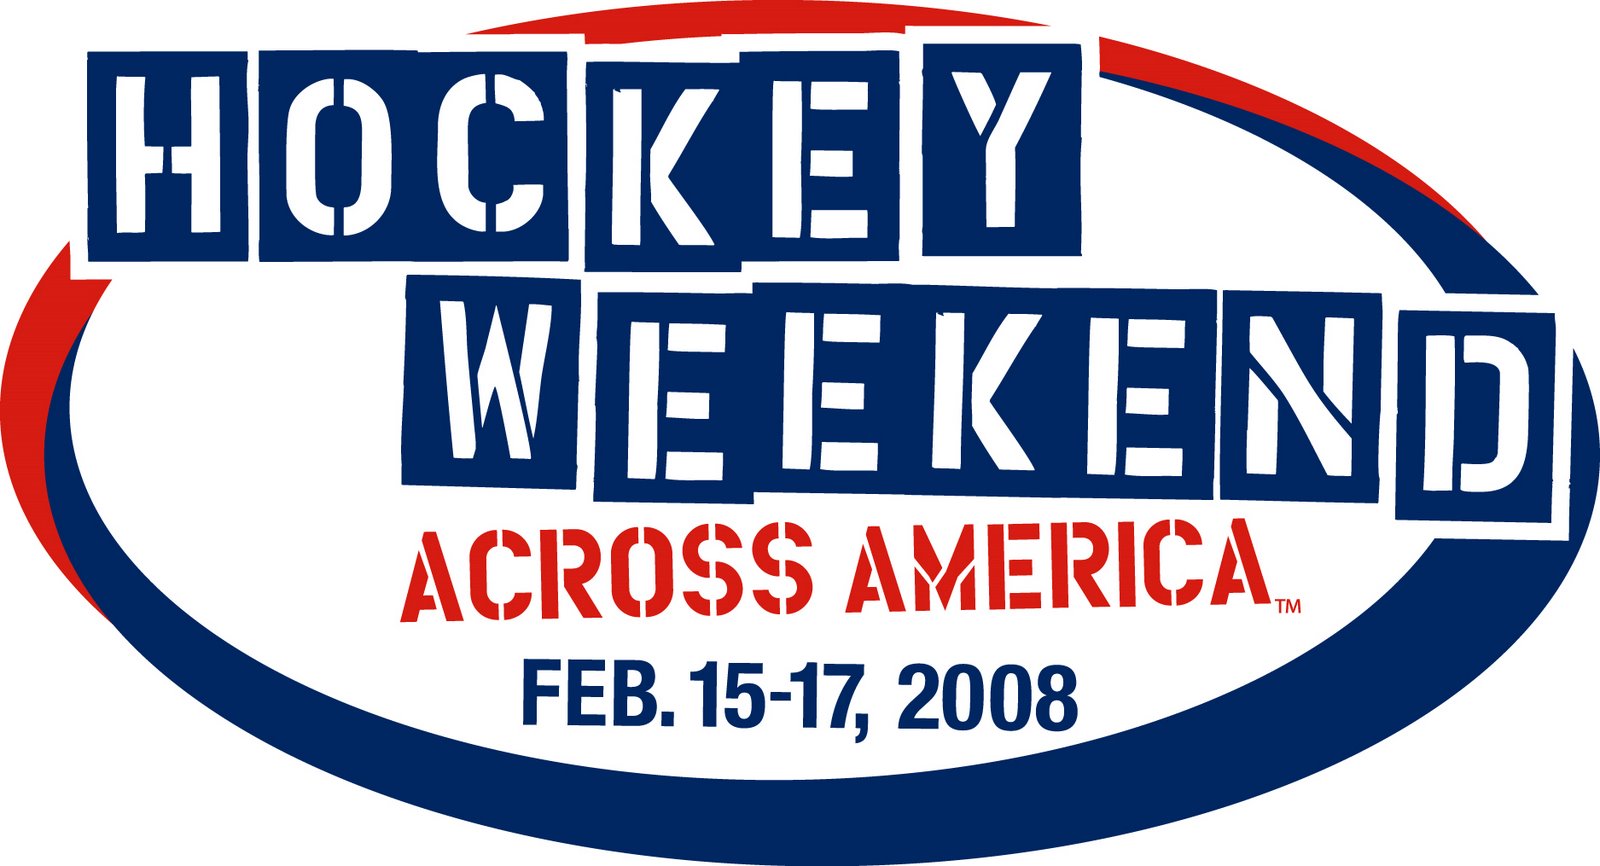 [Hockey+Weekend+Across+America.jpg]